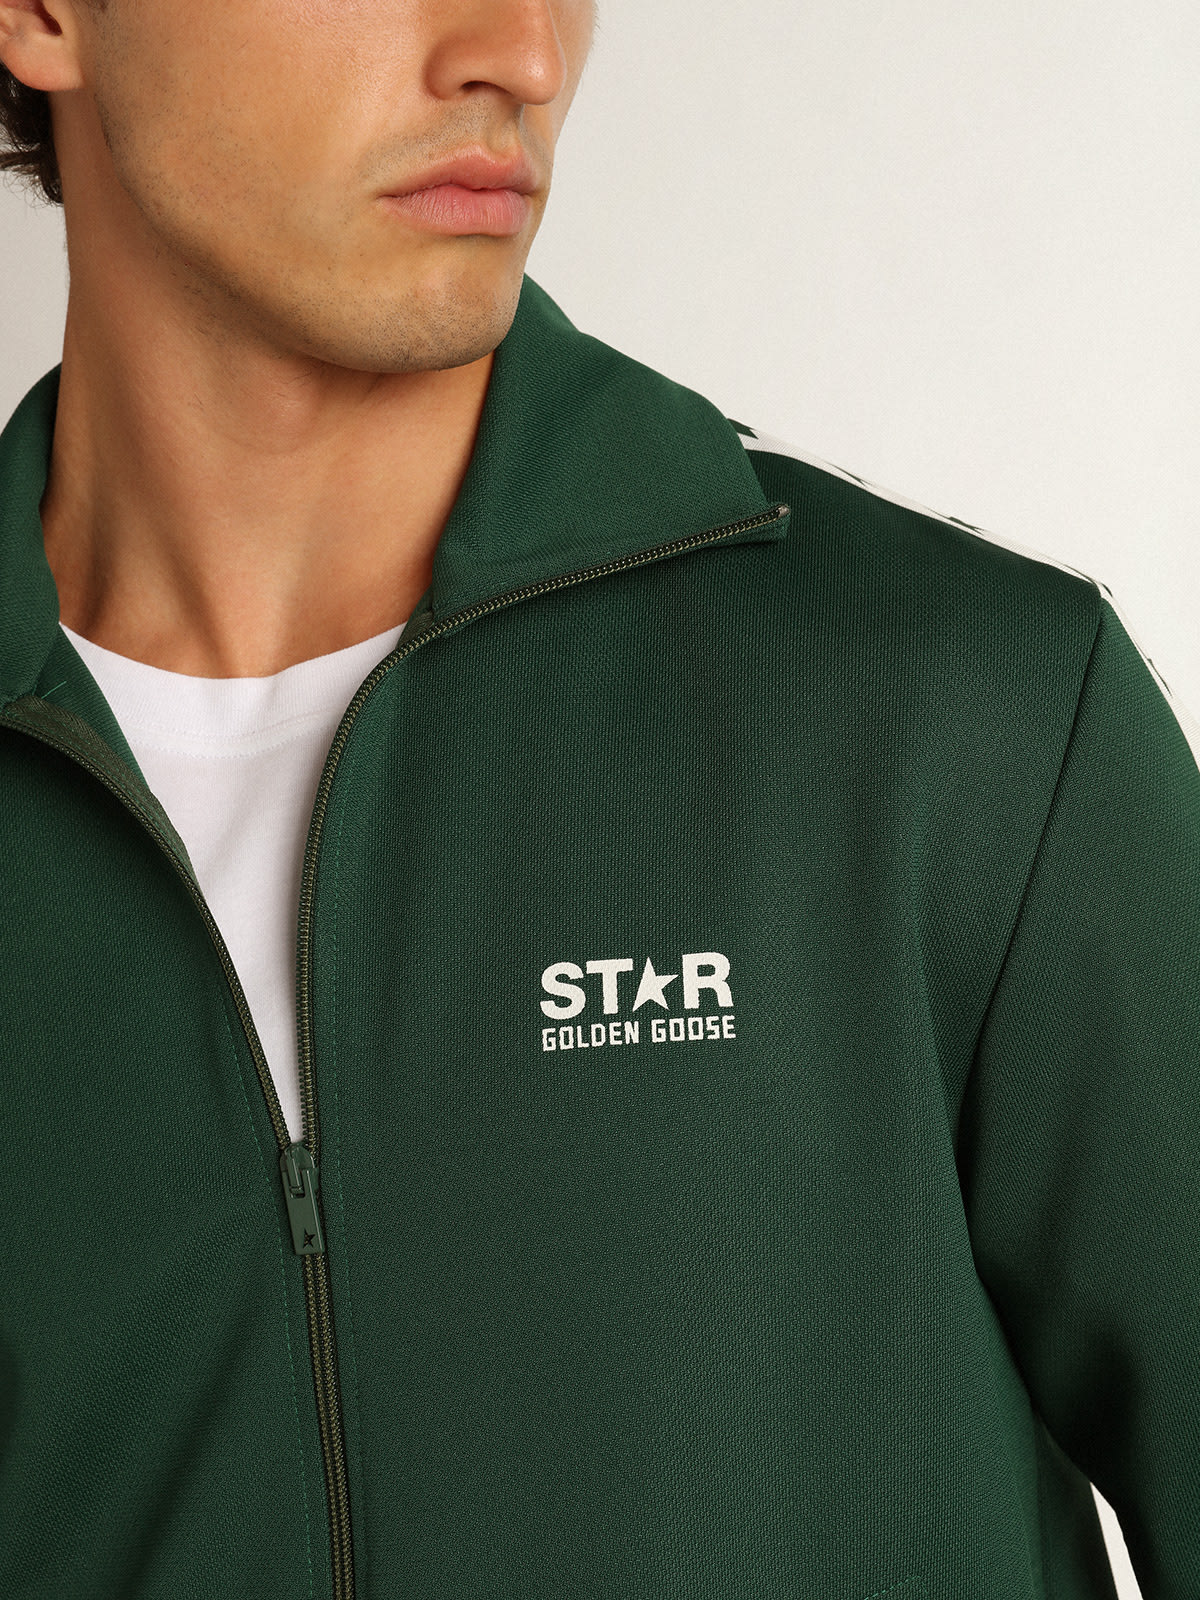 Golden Goose - Sweat-shirt avec fermeture à glissière Denis collection Star vert brillant avec bande blanche et étoiles vertes contrastées in 